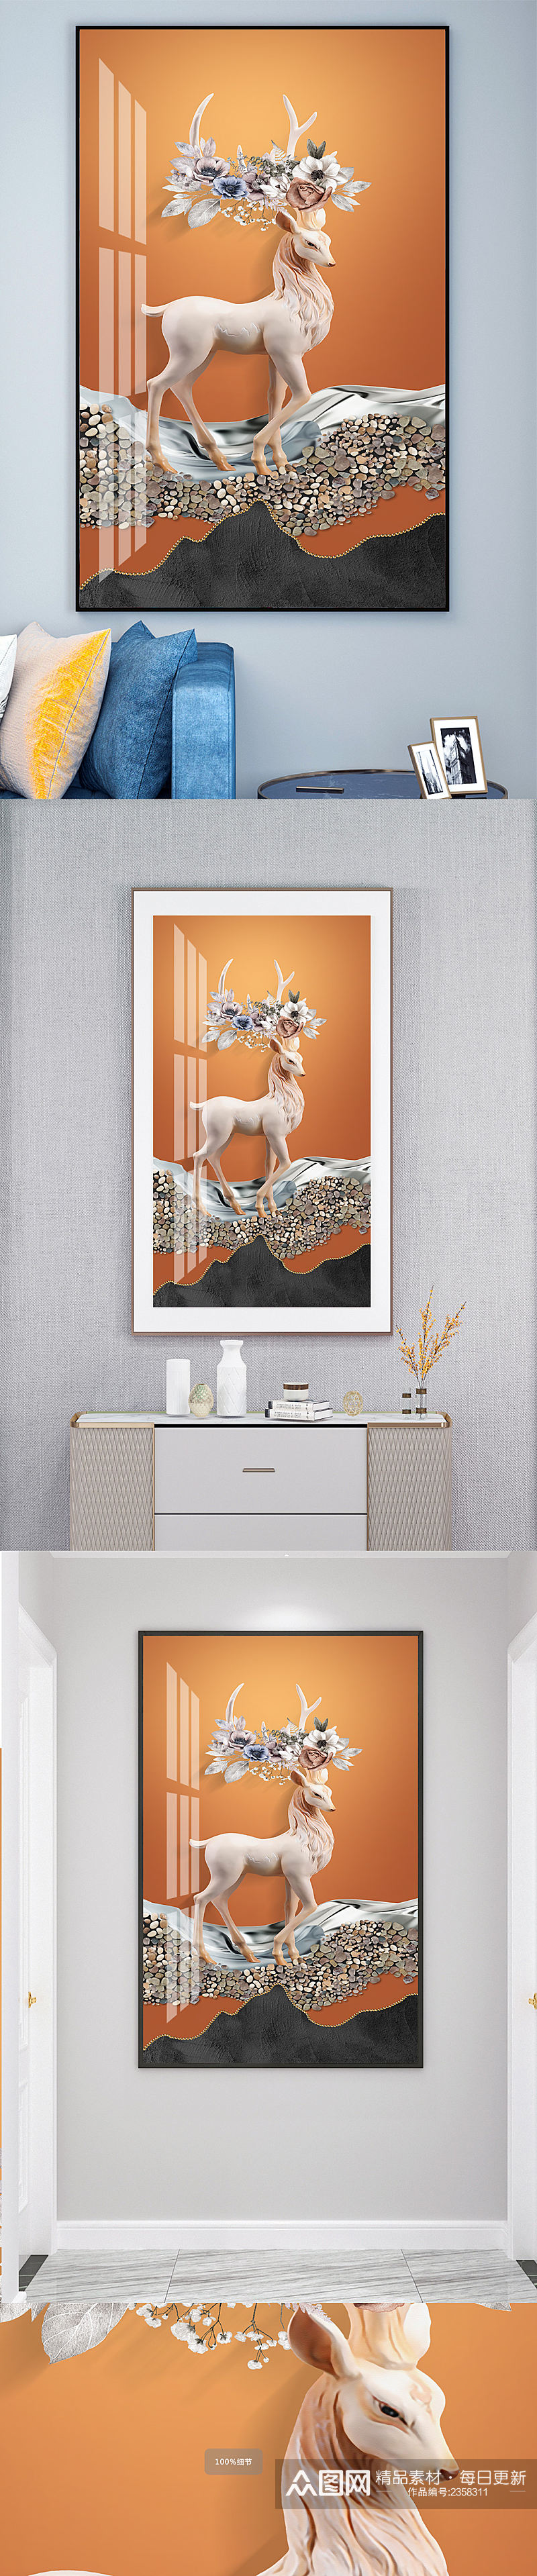 玉雕麋鹿鹿缘装饰画素材